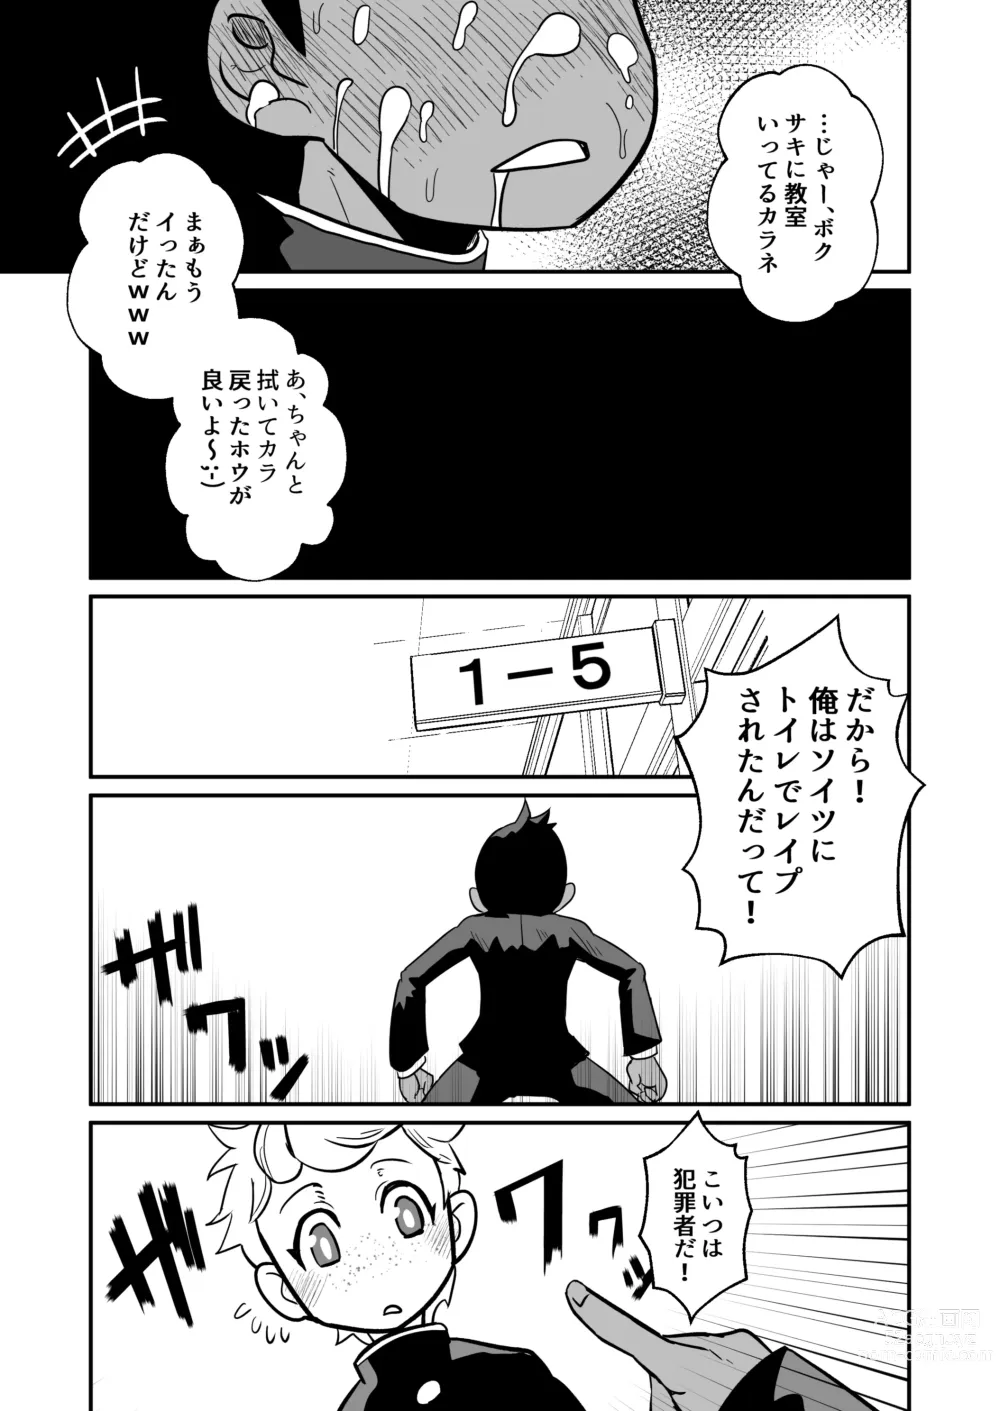 Page 22 of doujinshi Seiyoku no Hanashi.